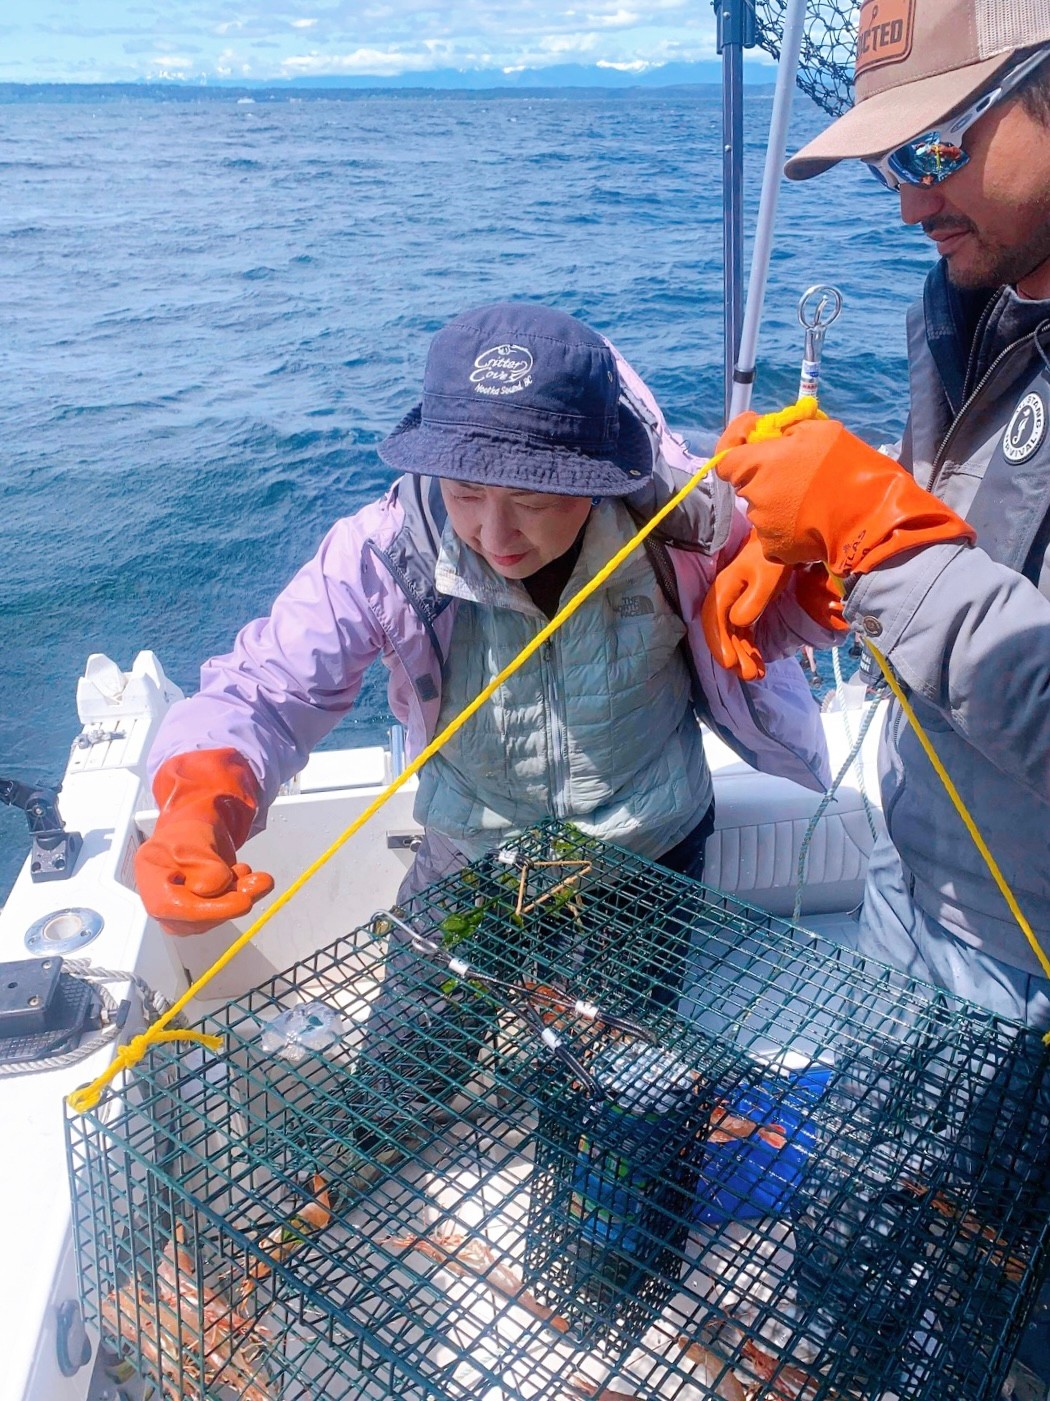 今日の写真は Izumi さんがご提供くださった、シアトルのボタン海老（spot prawn）漁。